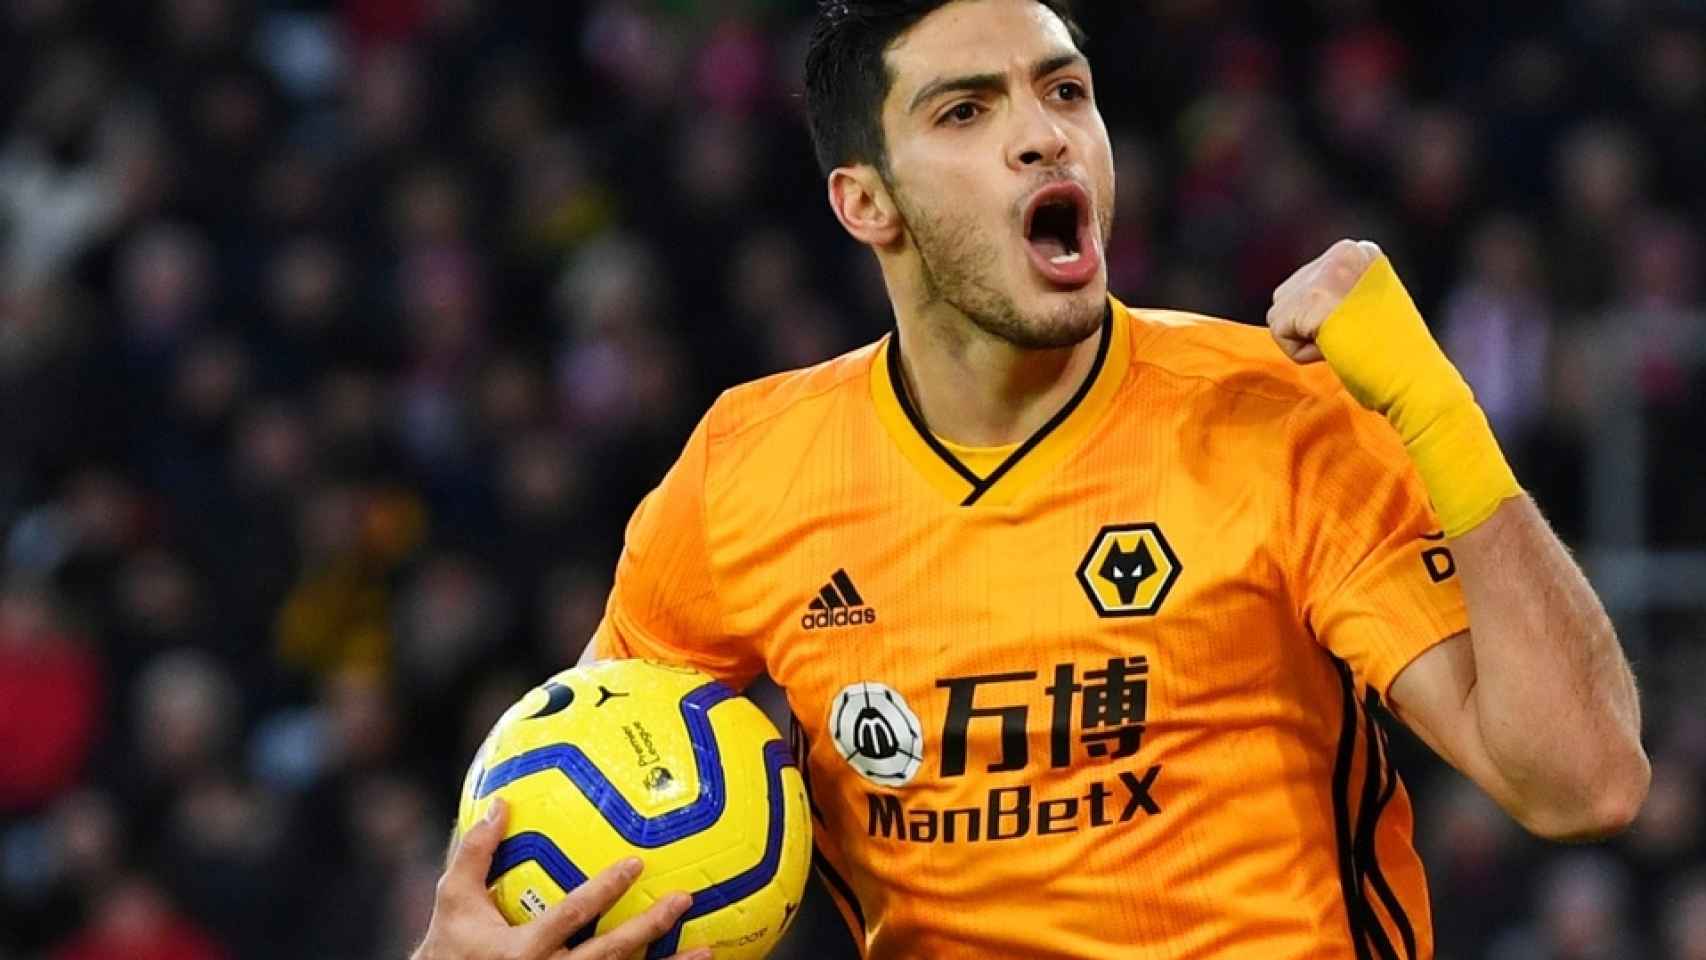 Raúl Jiménez celebra un gol con el Wolverhampton